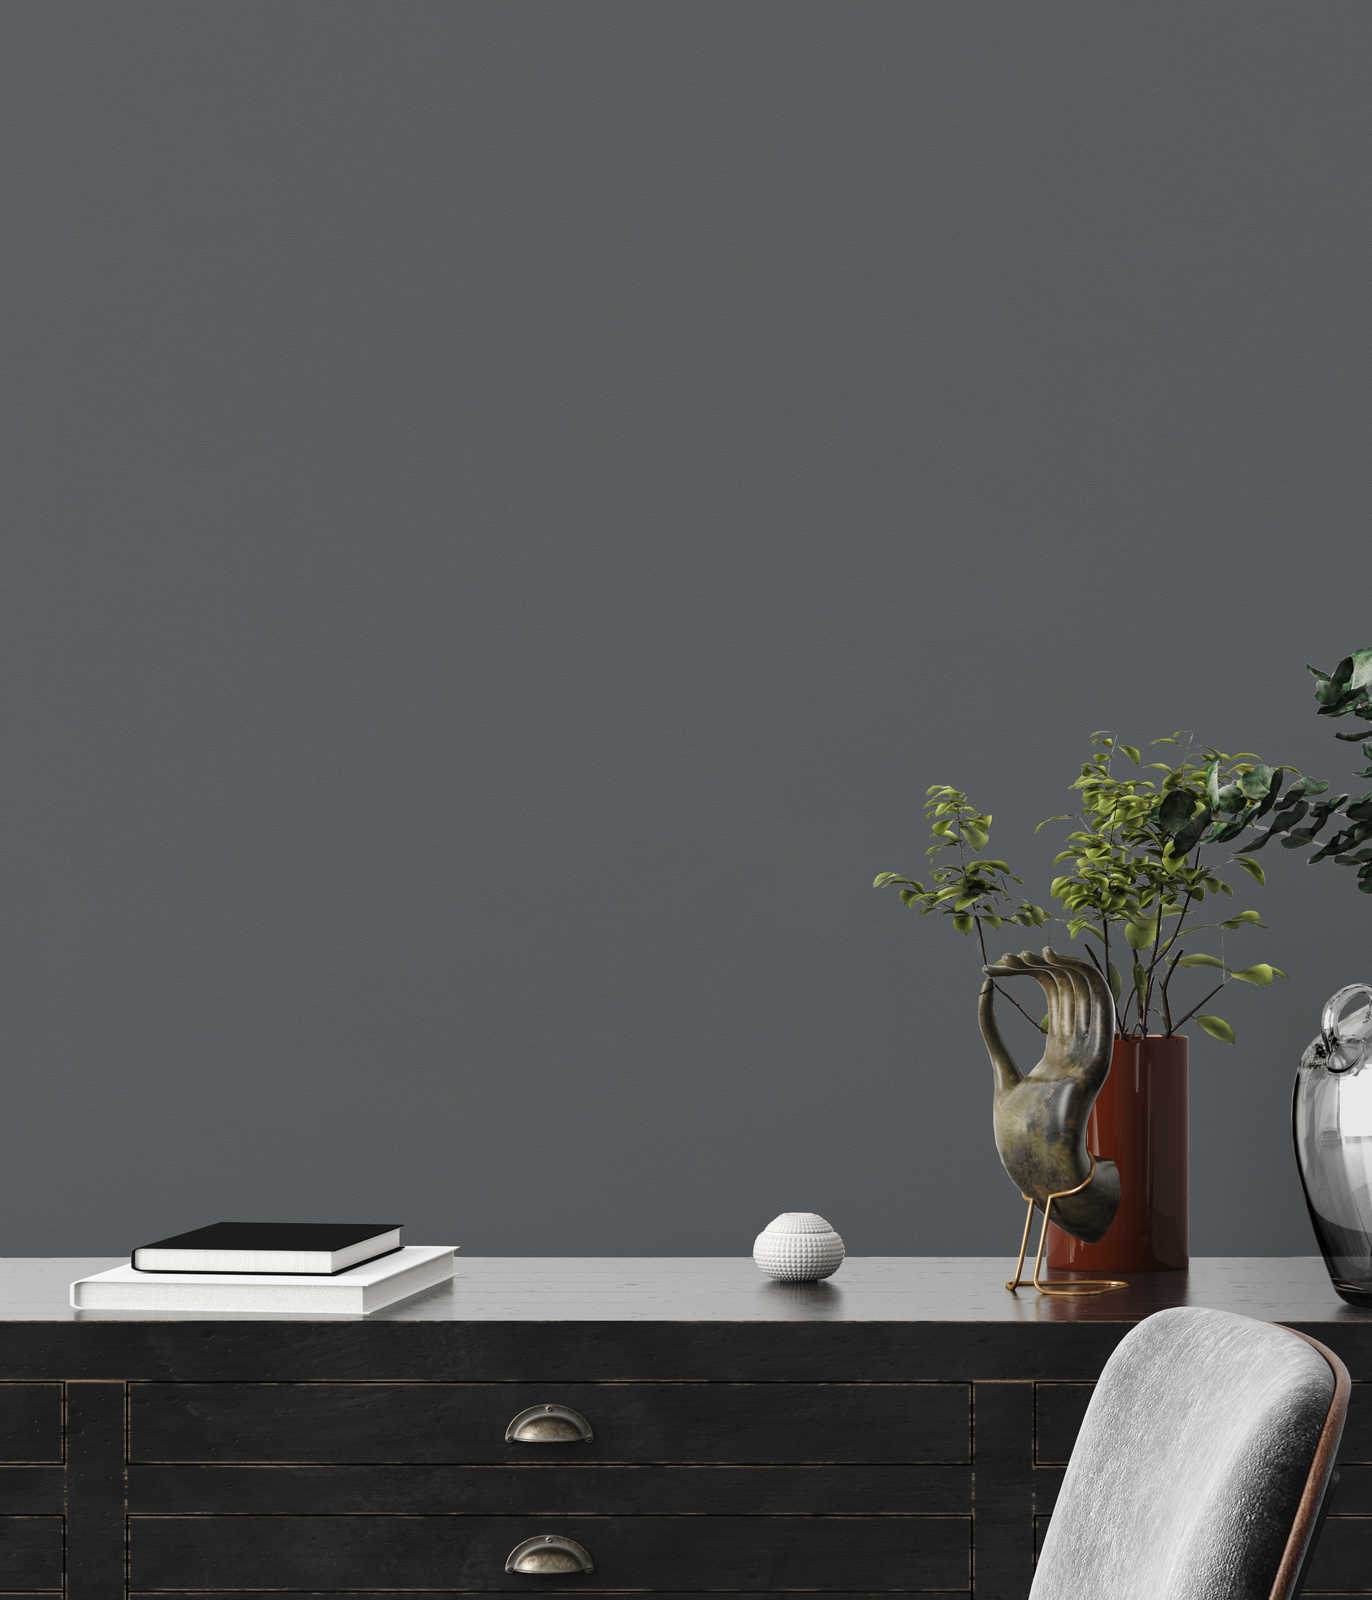             Plain wallpaper dark grey anthracite matt & textured
        